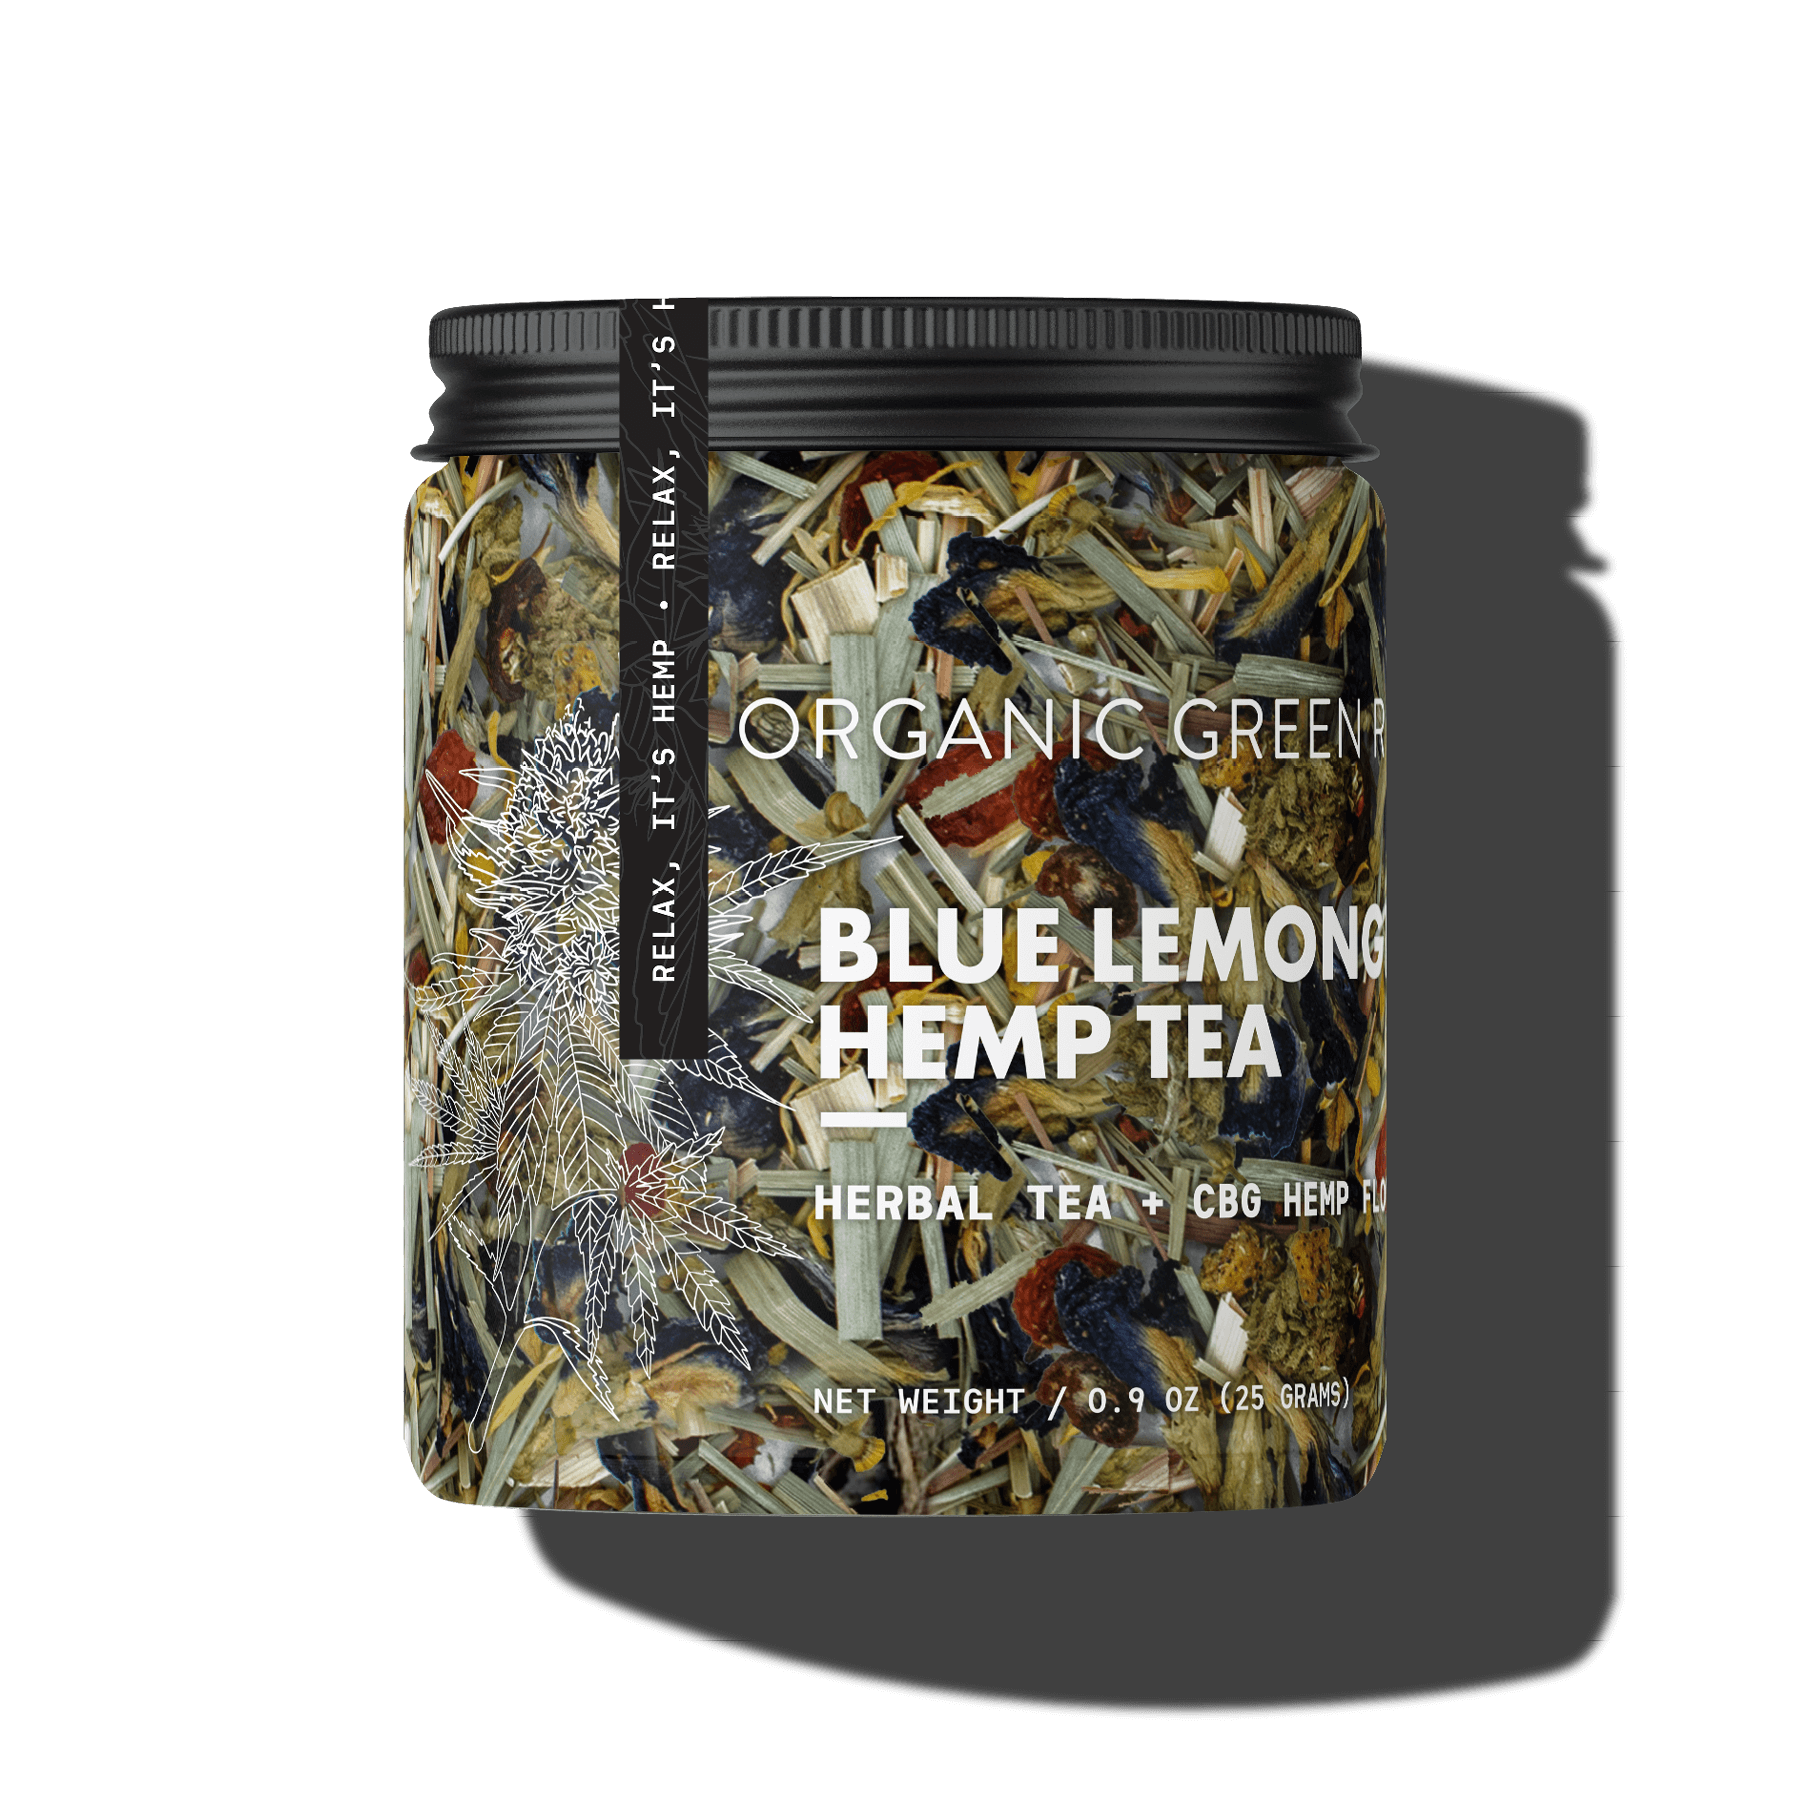 Blue Lemongrass Hemp Tea